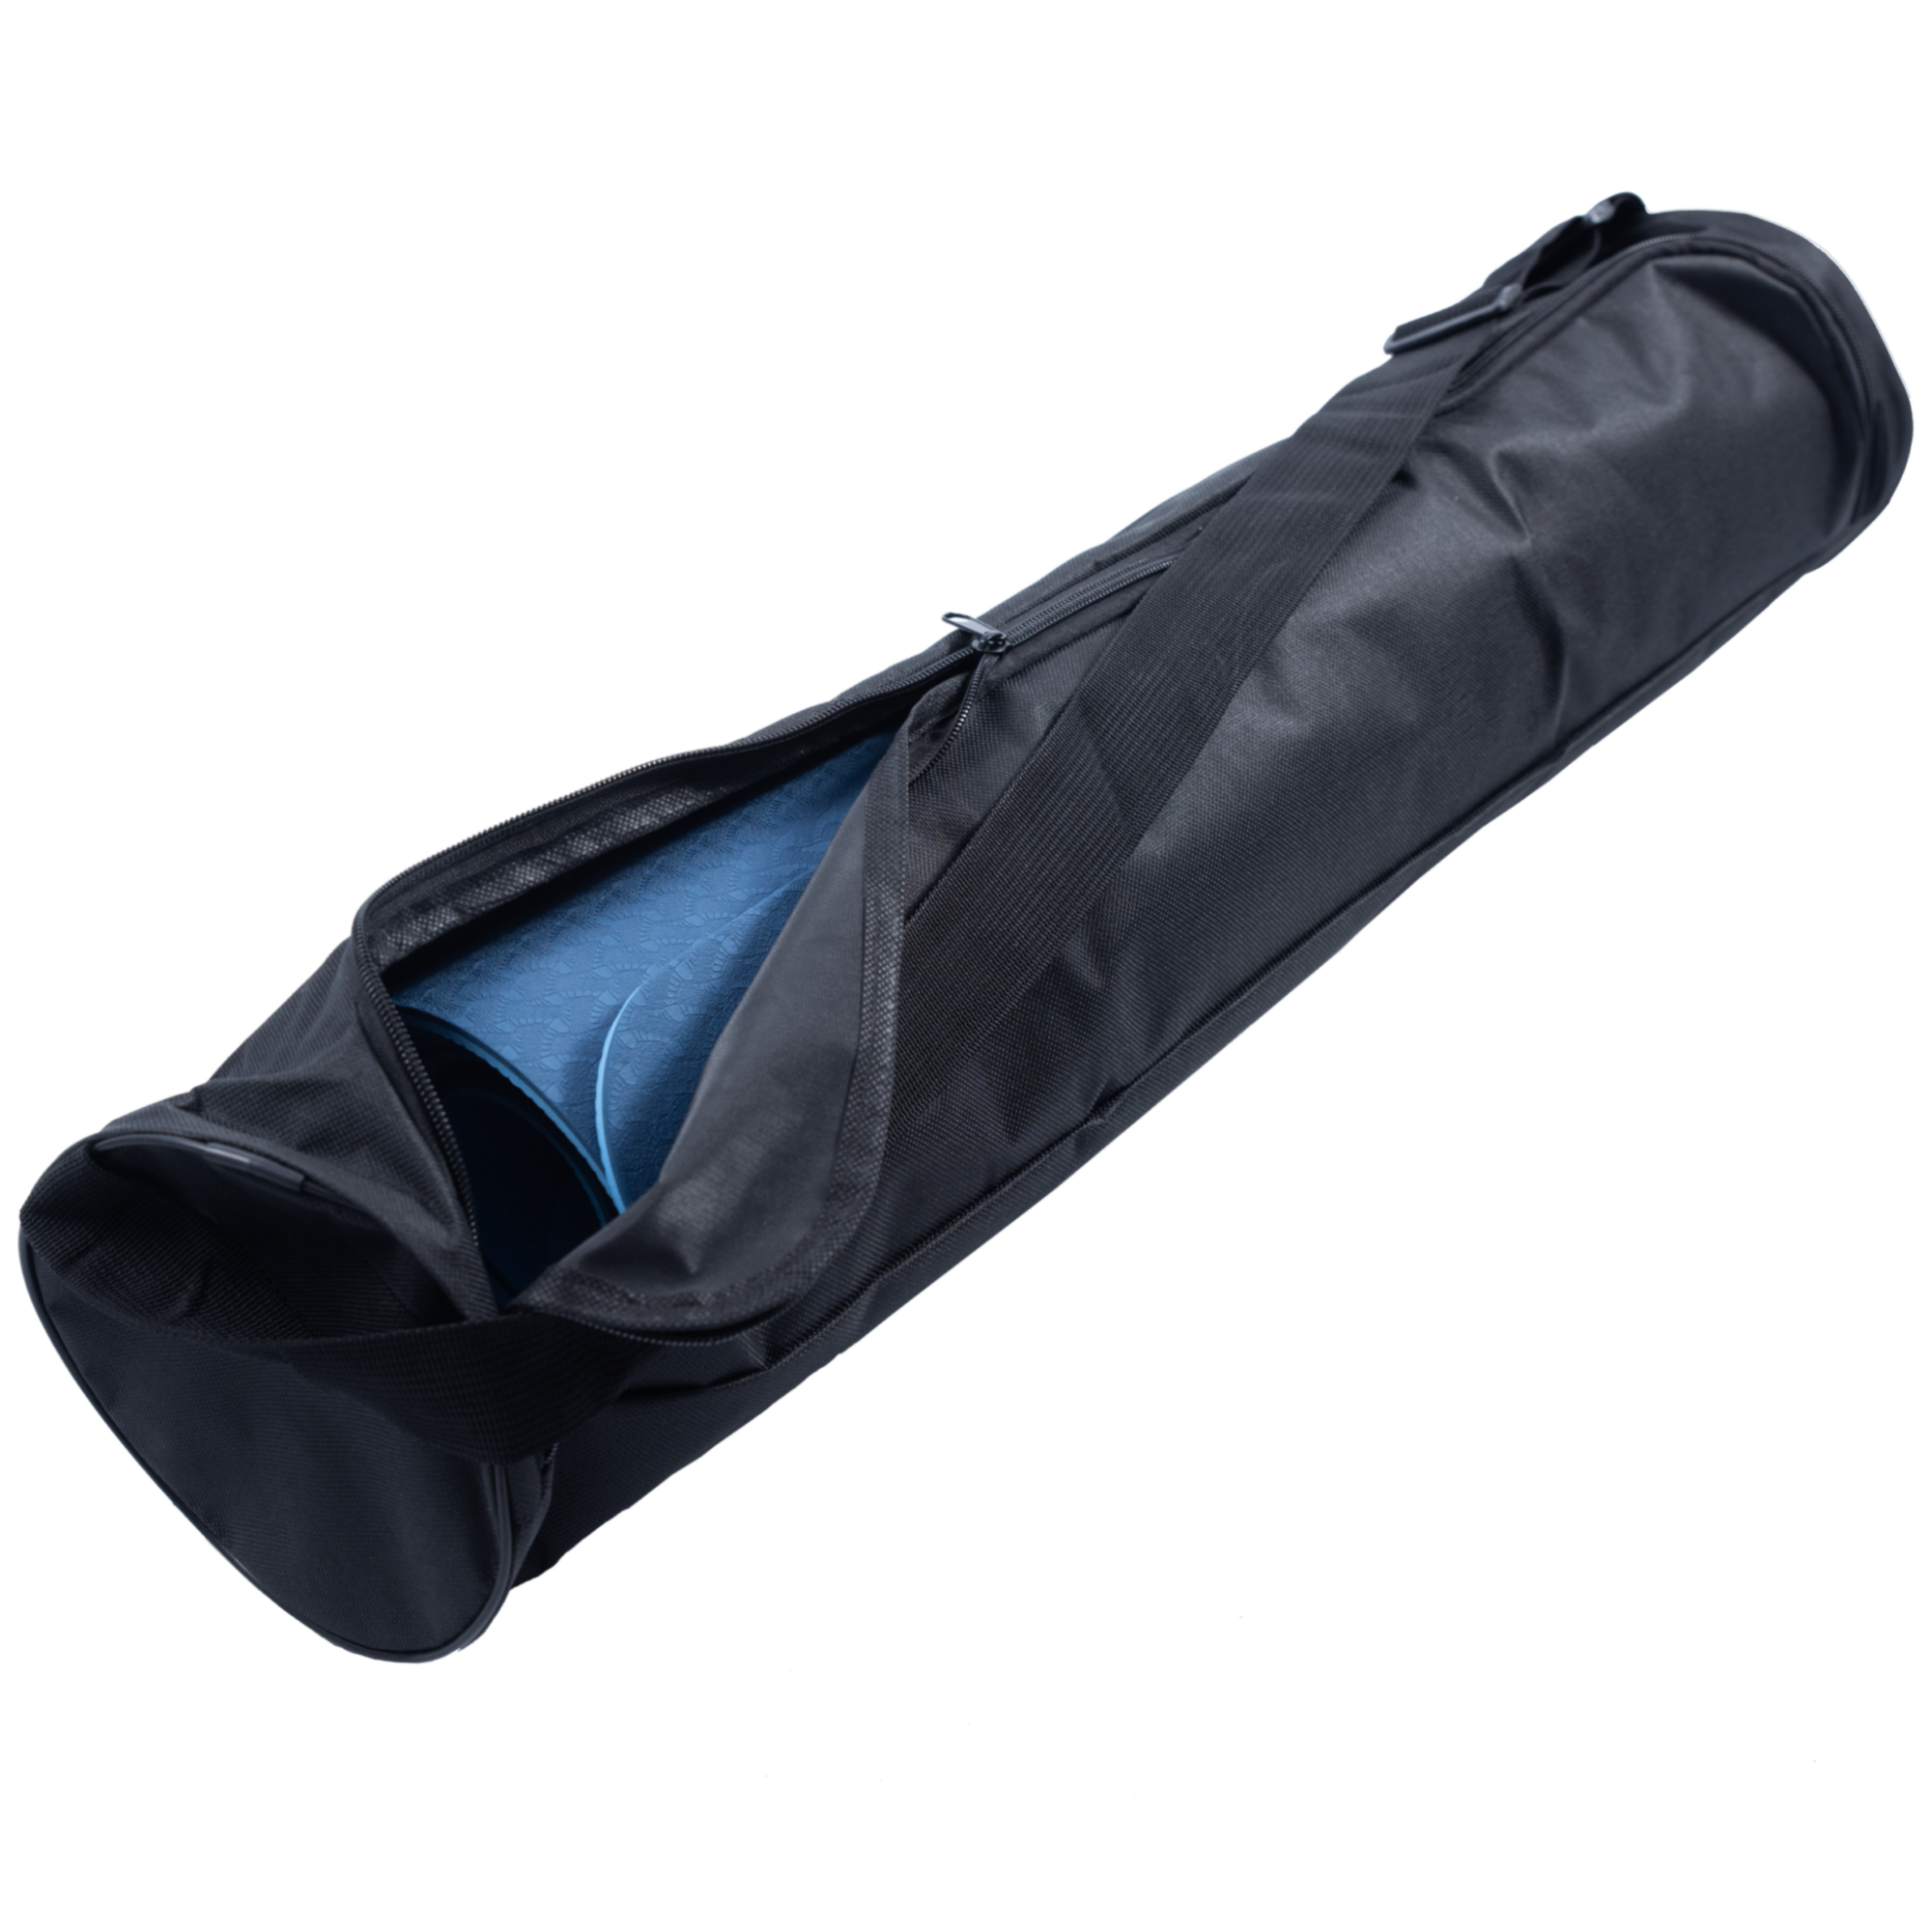 Taske til Yogamåtte – Praktisk og let med bæresele og lynlås.